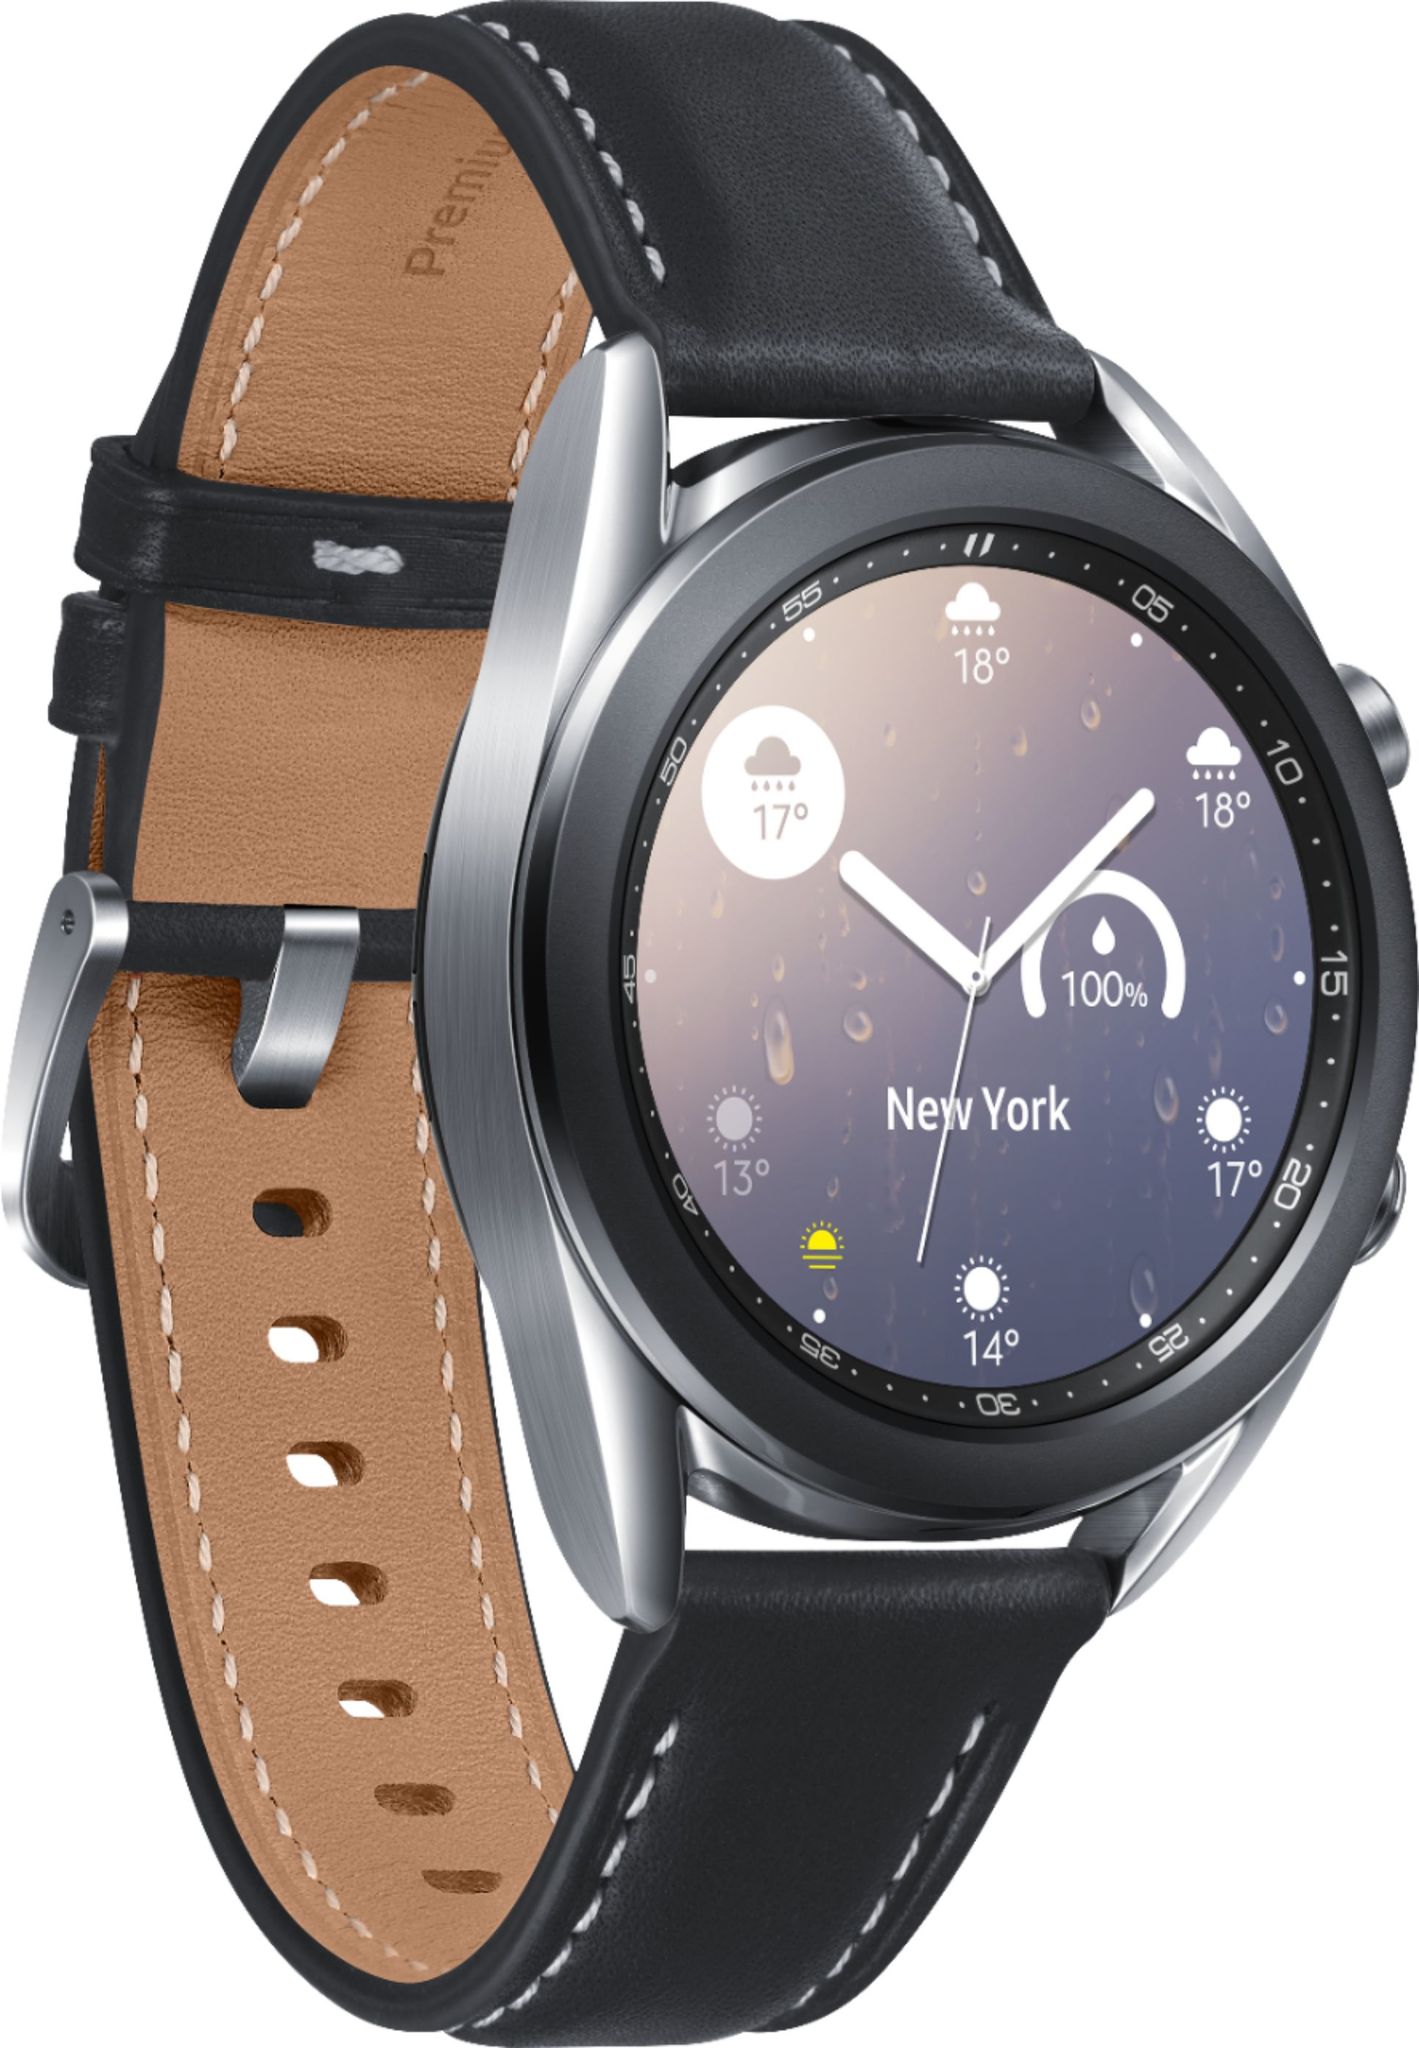 Samsung Galaxy Watch 3 vs. Garmin Vivoactive 4: Which should you buy?